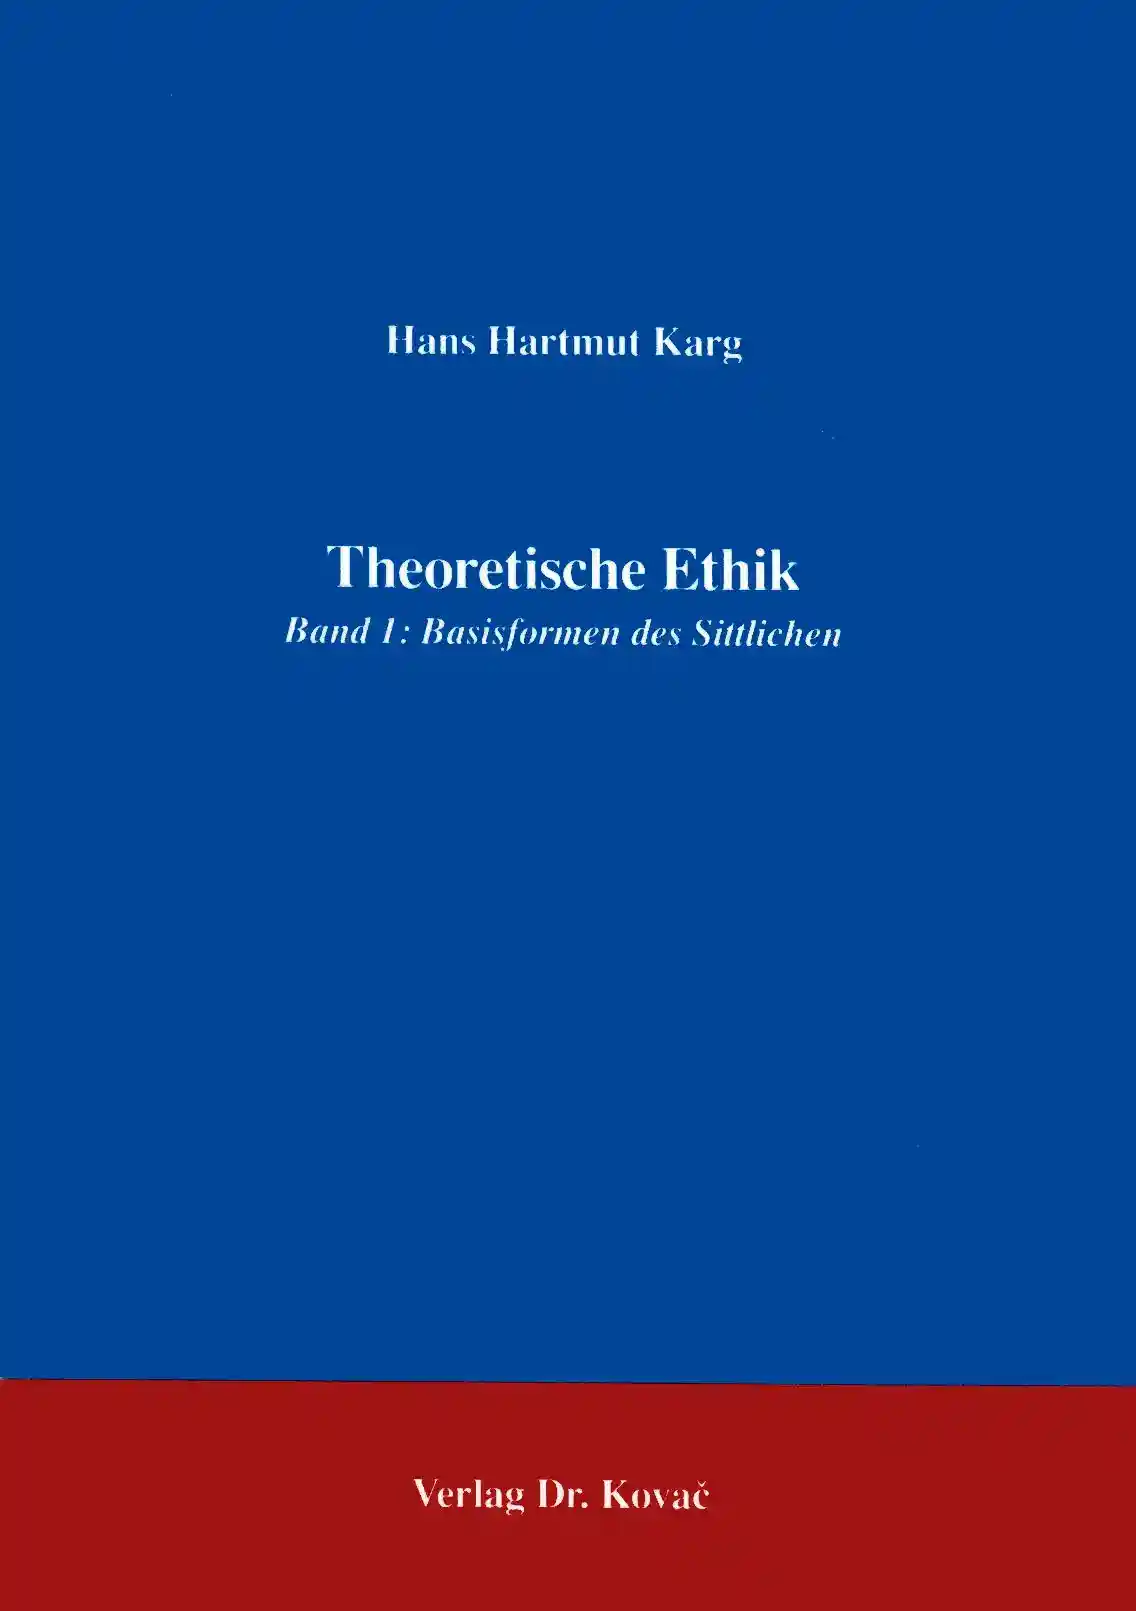 Theoretische Ethik Band 1: Basisformen des Sittlichen (Forschungsarbeit)